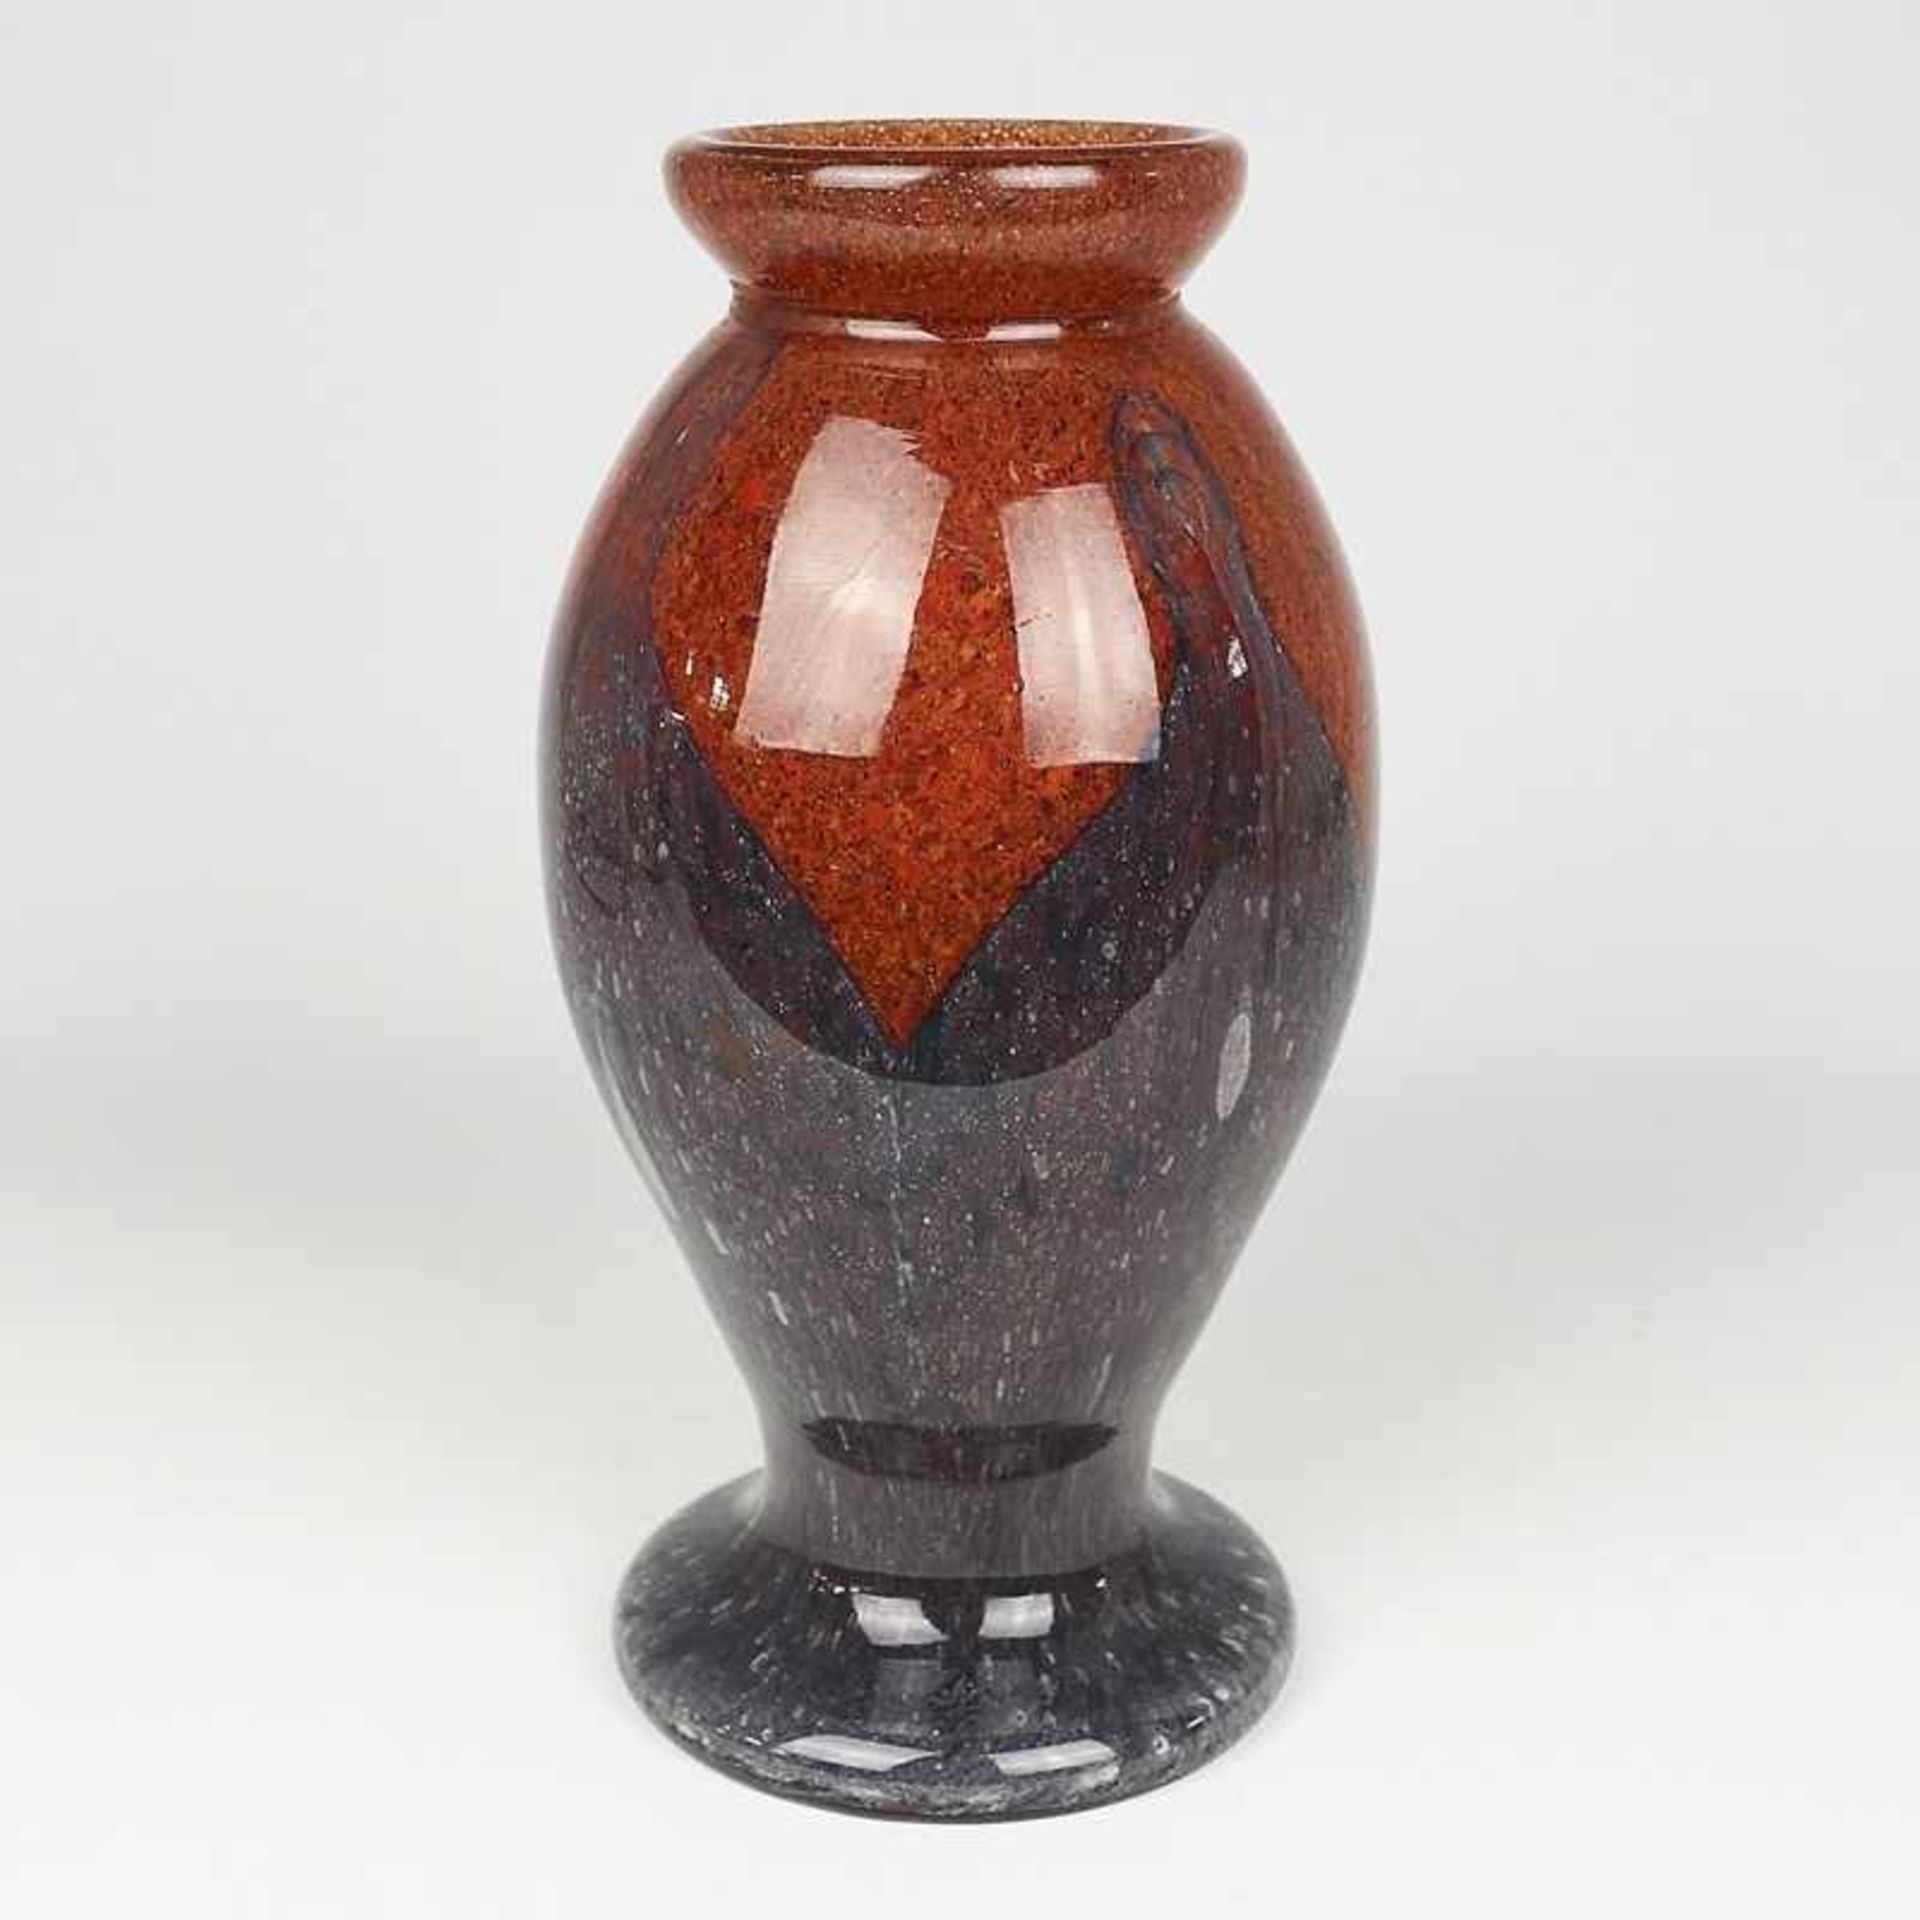 Schneider - Vase um 1918-1930, Scoiéte Anonyme des Verreries, Frankreich, farbloses Glas, runder